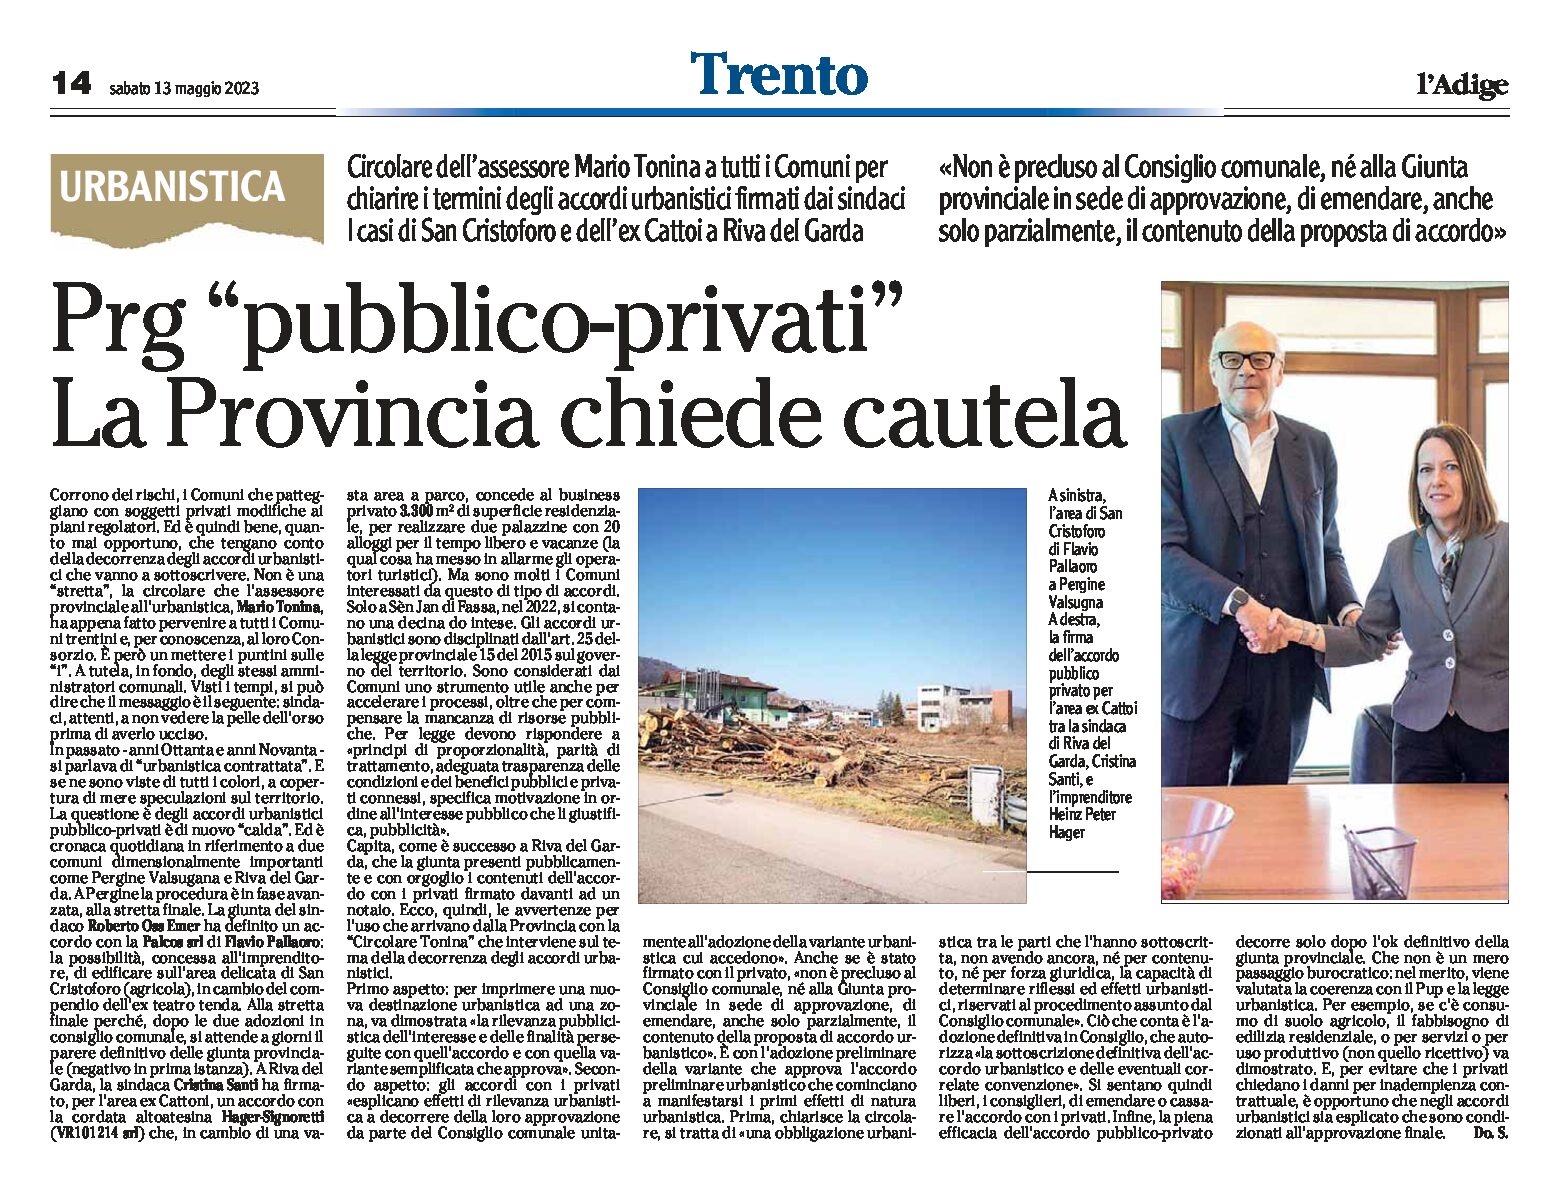 Trento, urbanistica: Prg “pubblico-privati”. La Provincia chiede cautela